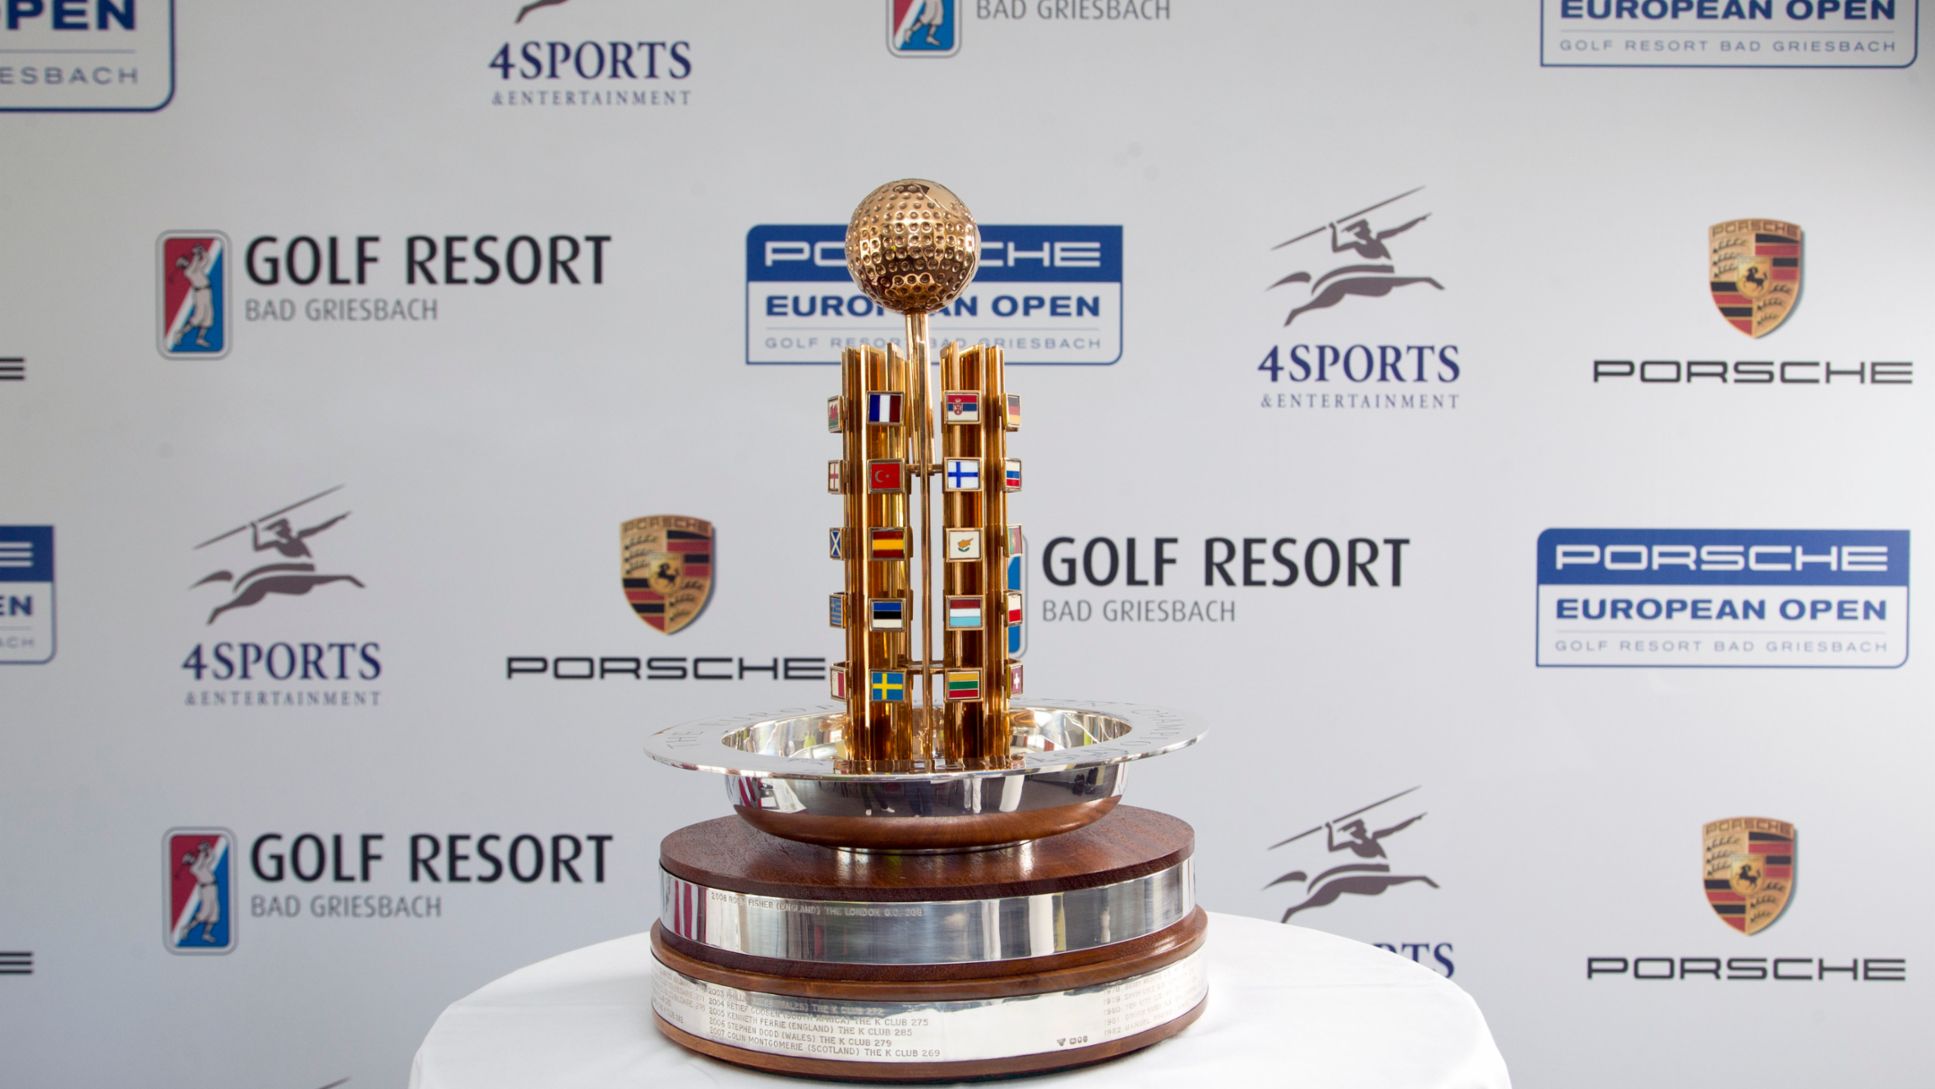 Porsche European Open Trophy, Golfresort Bad Griesbach, 2015, Porsche AG